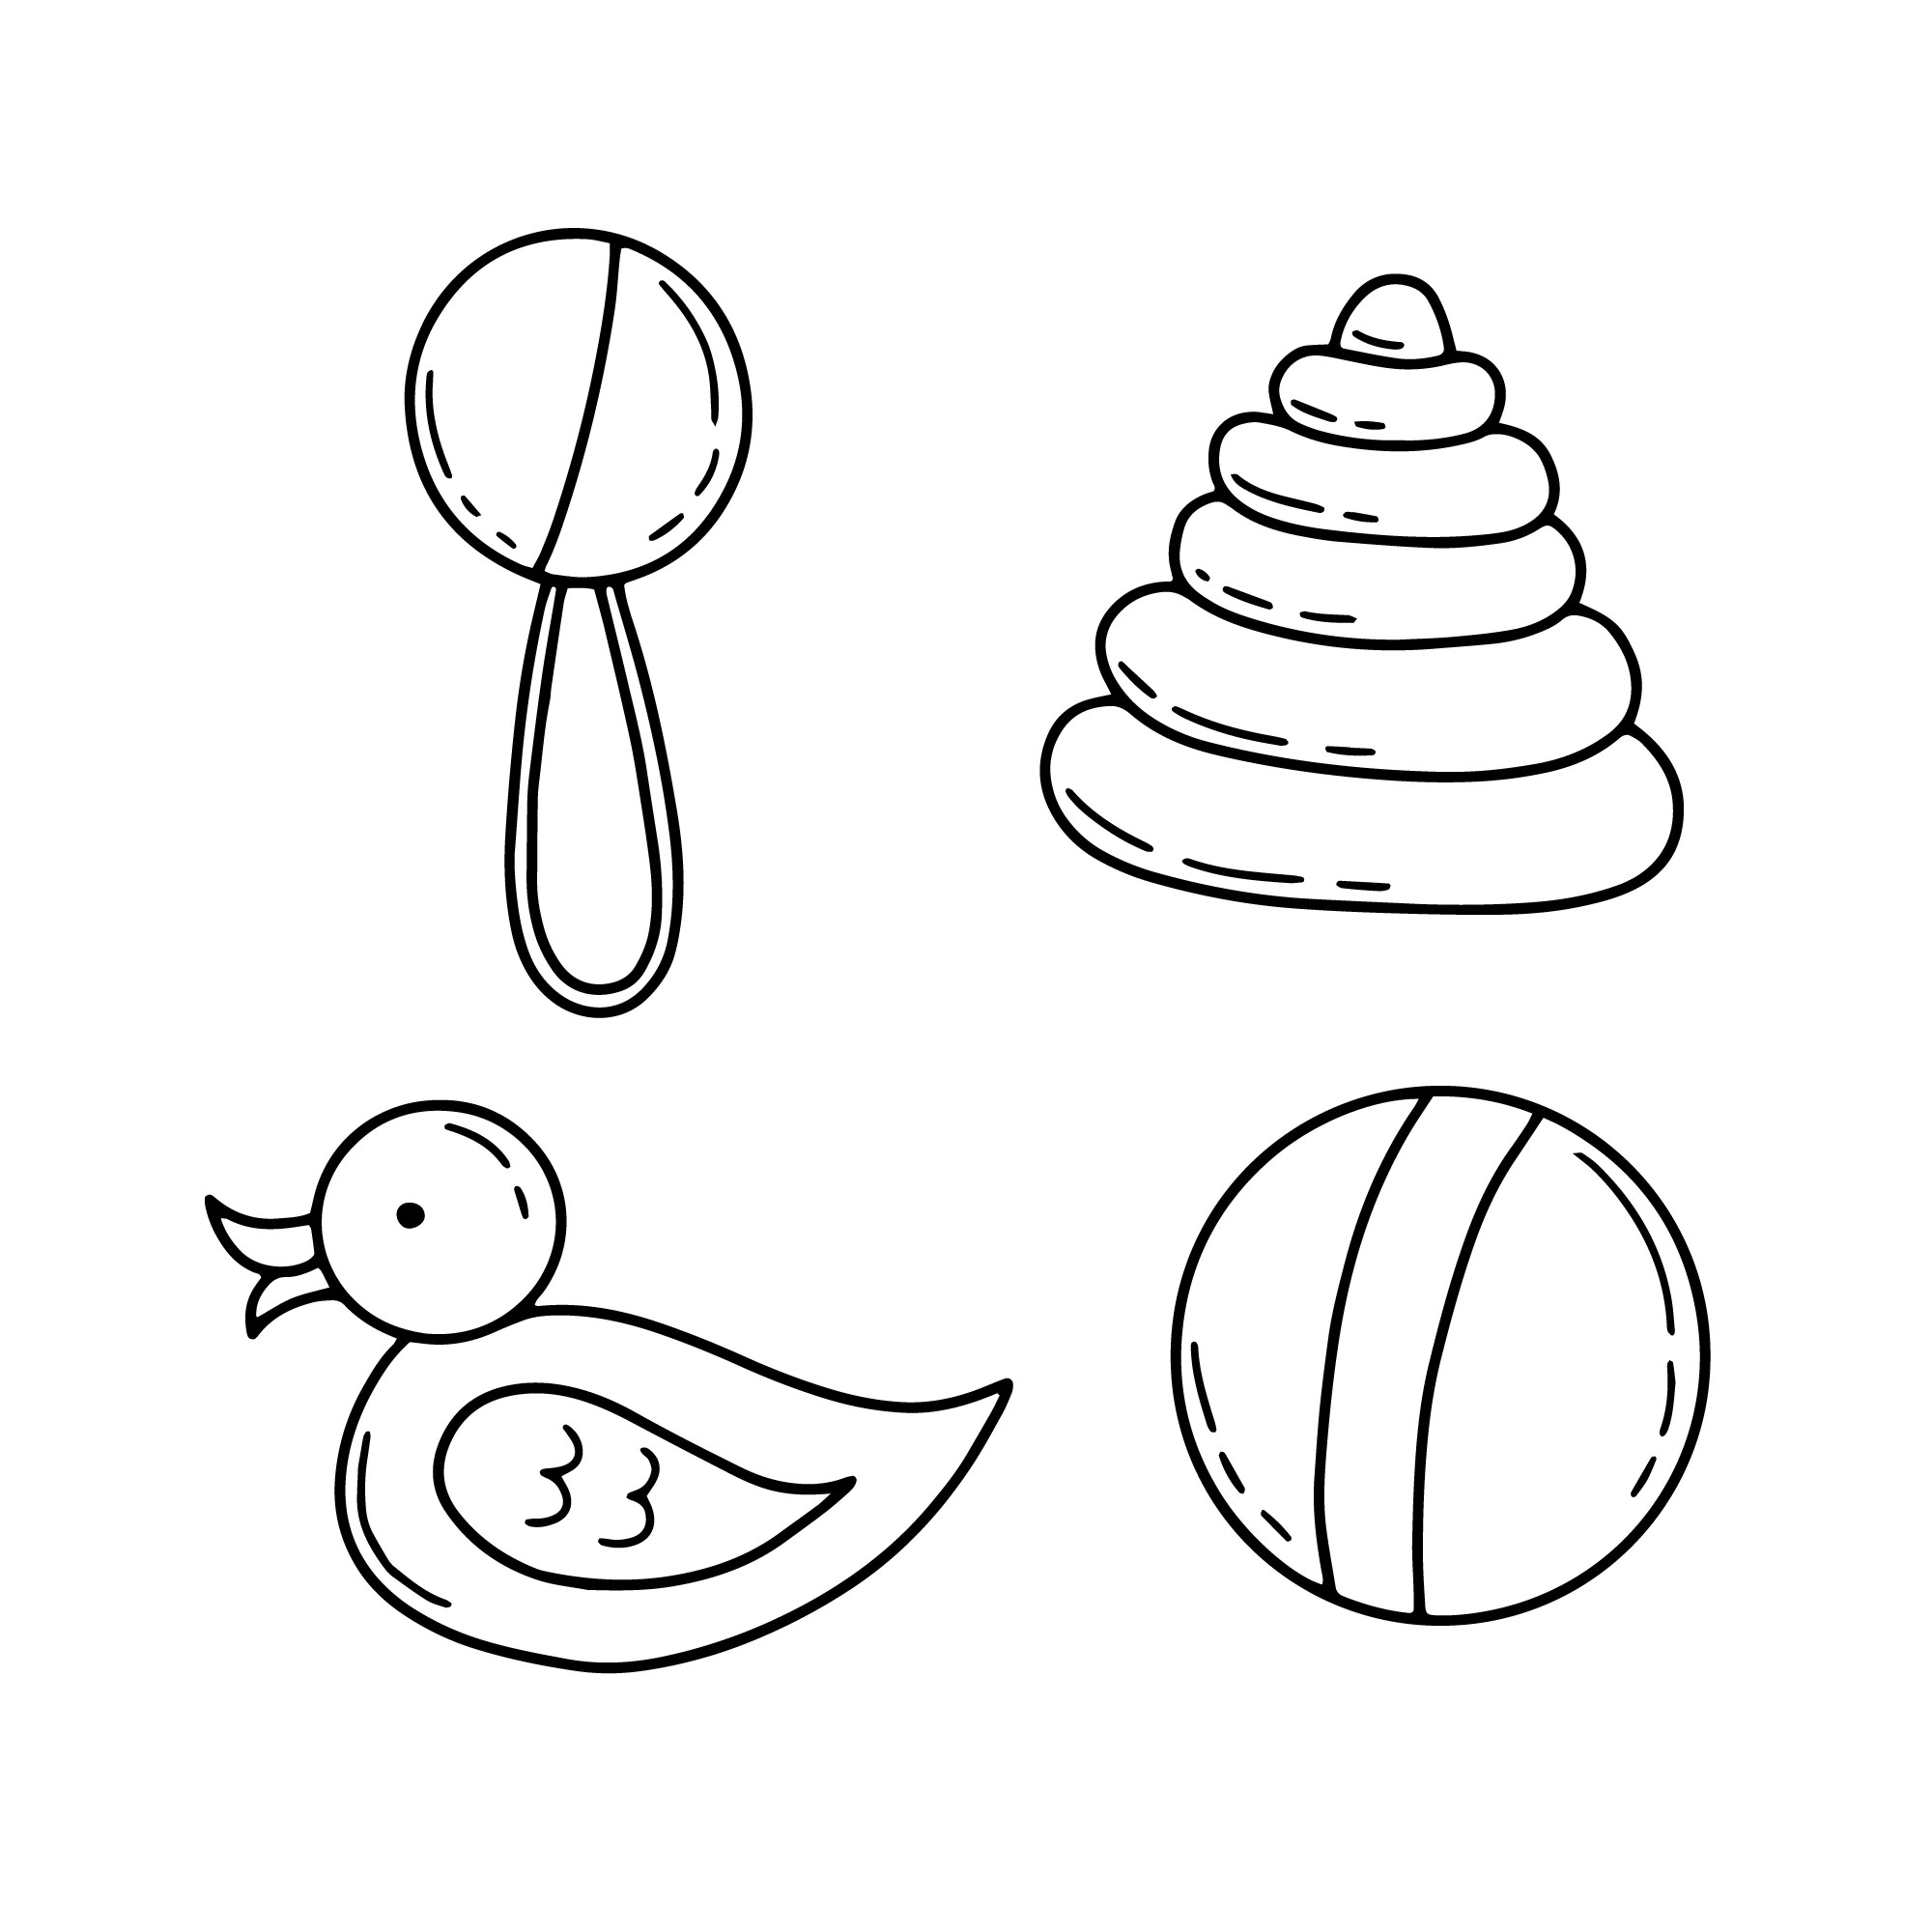 Раскраска для детей: игрушки для младенцев: погремушка, пирамидка, мячик и резиновая уточка